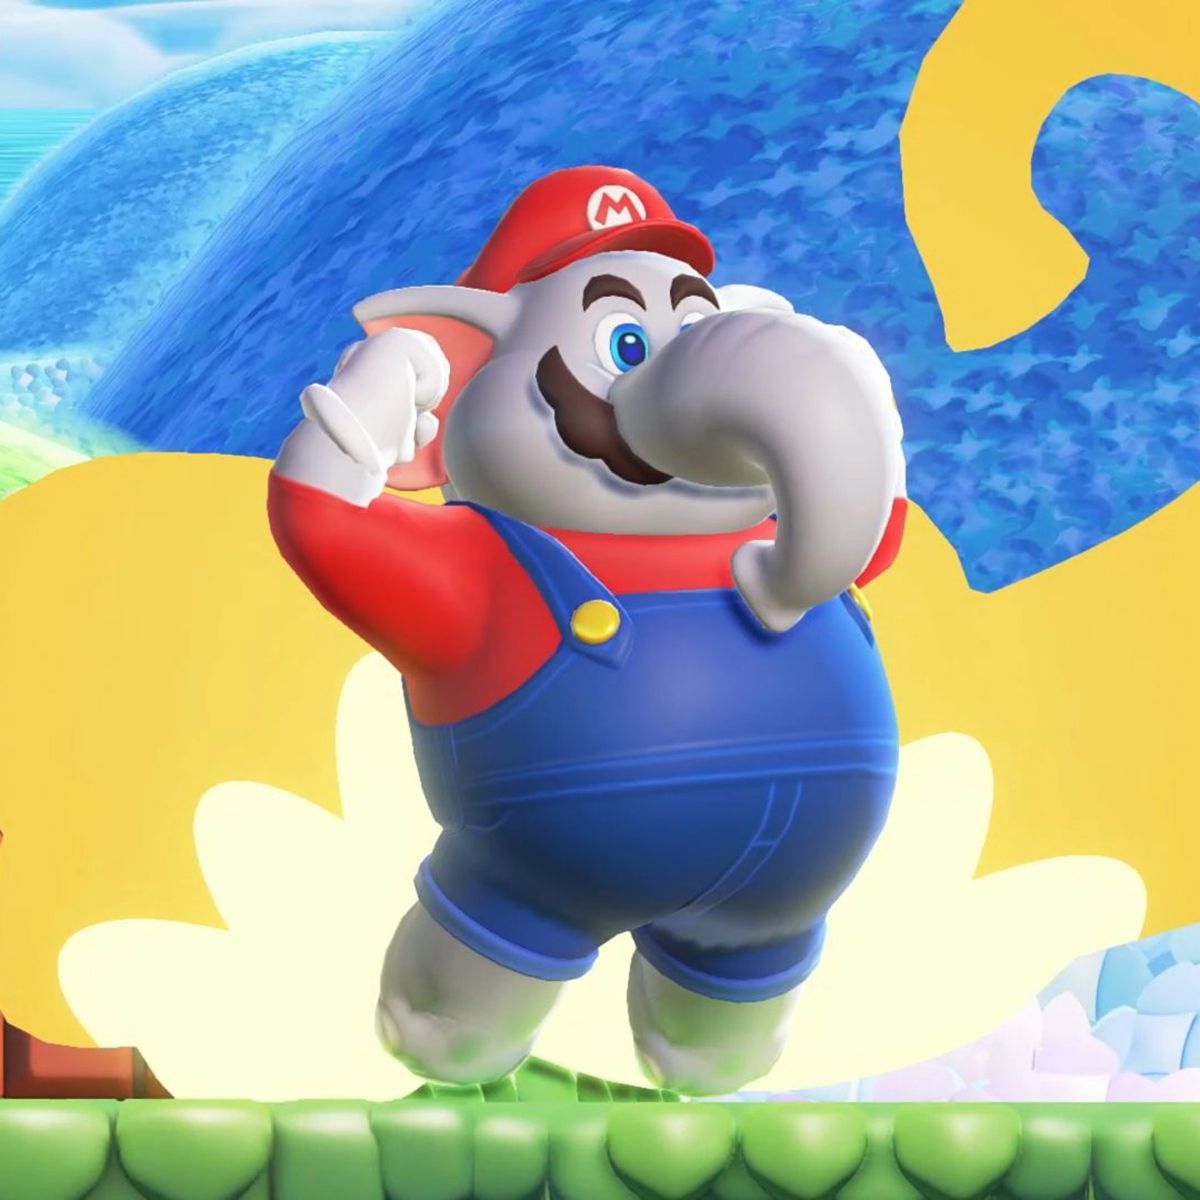 Mario Elefante in Super Mario Bros. Wonder